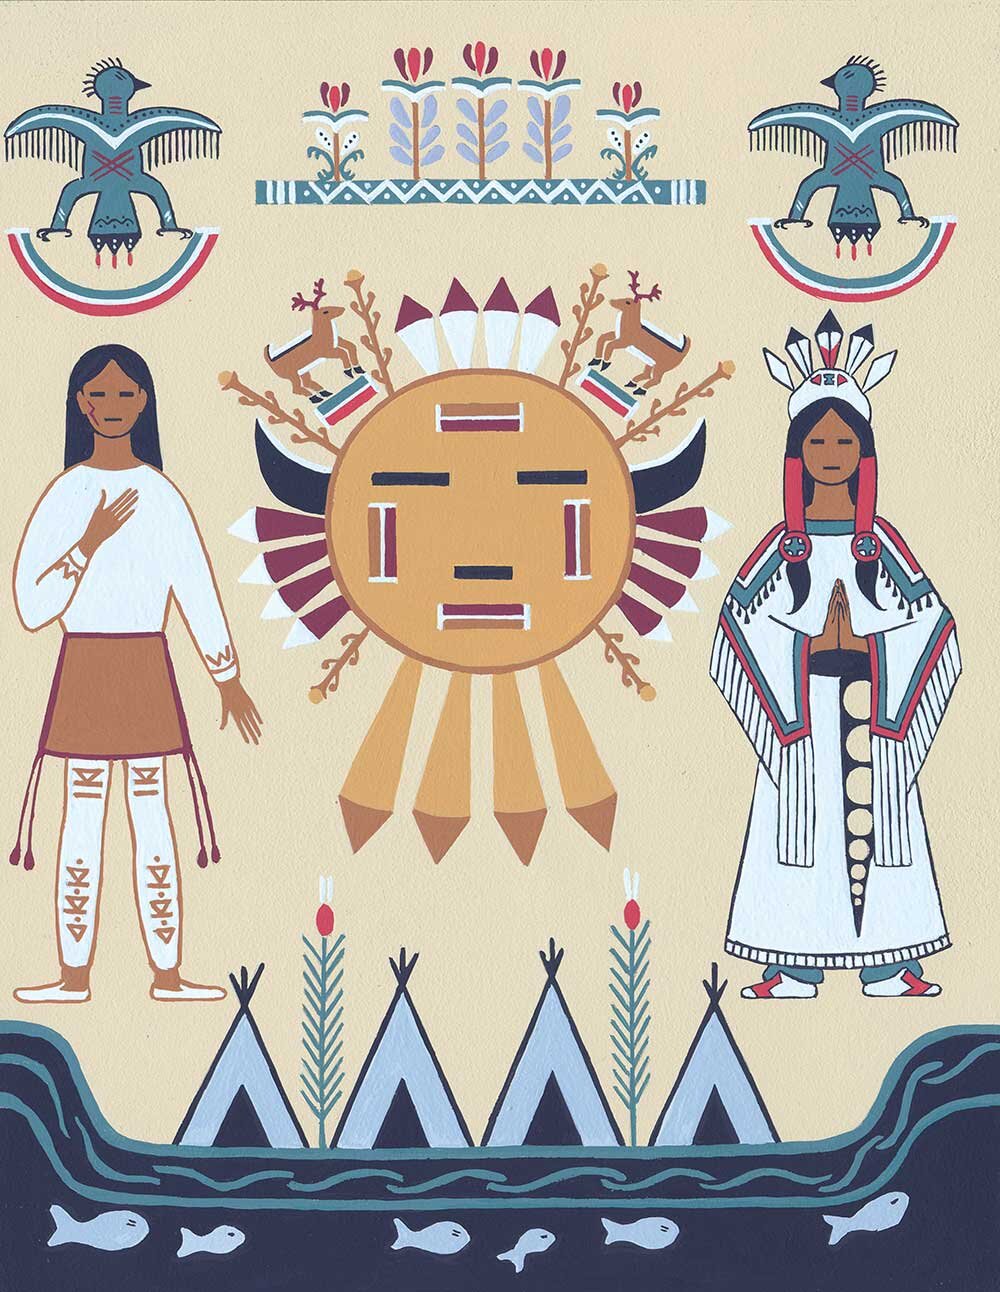 Poia-Native-American-folktale-2016-1.jpg